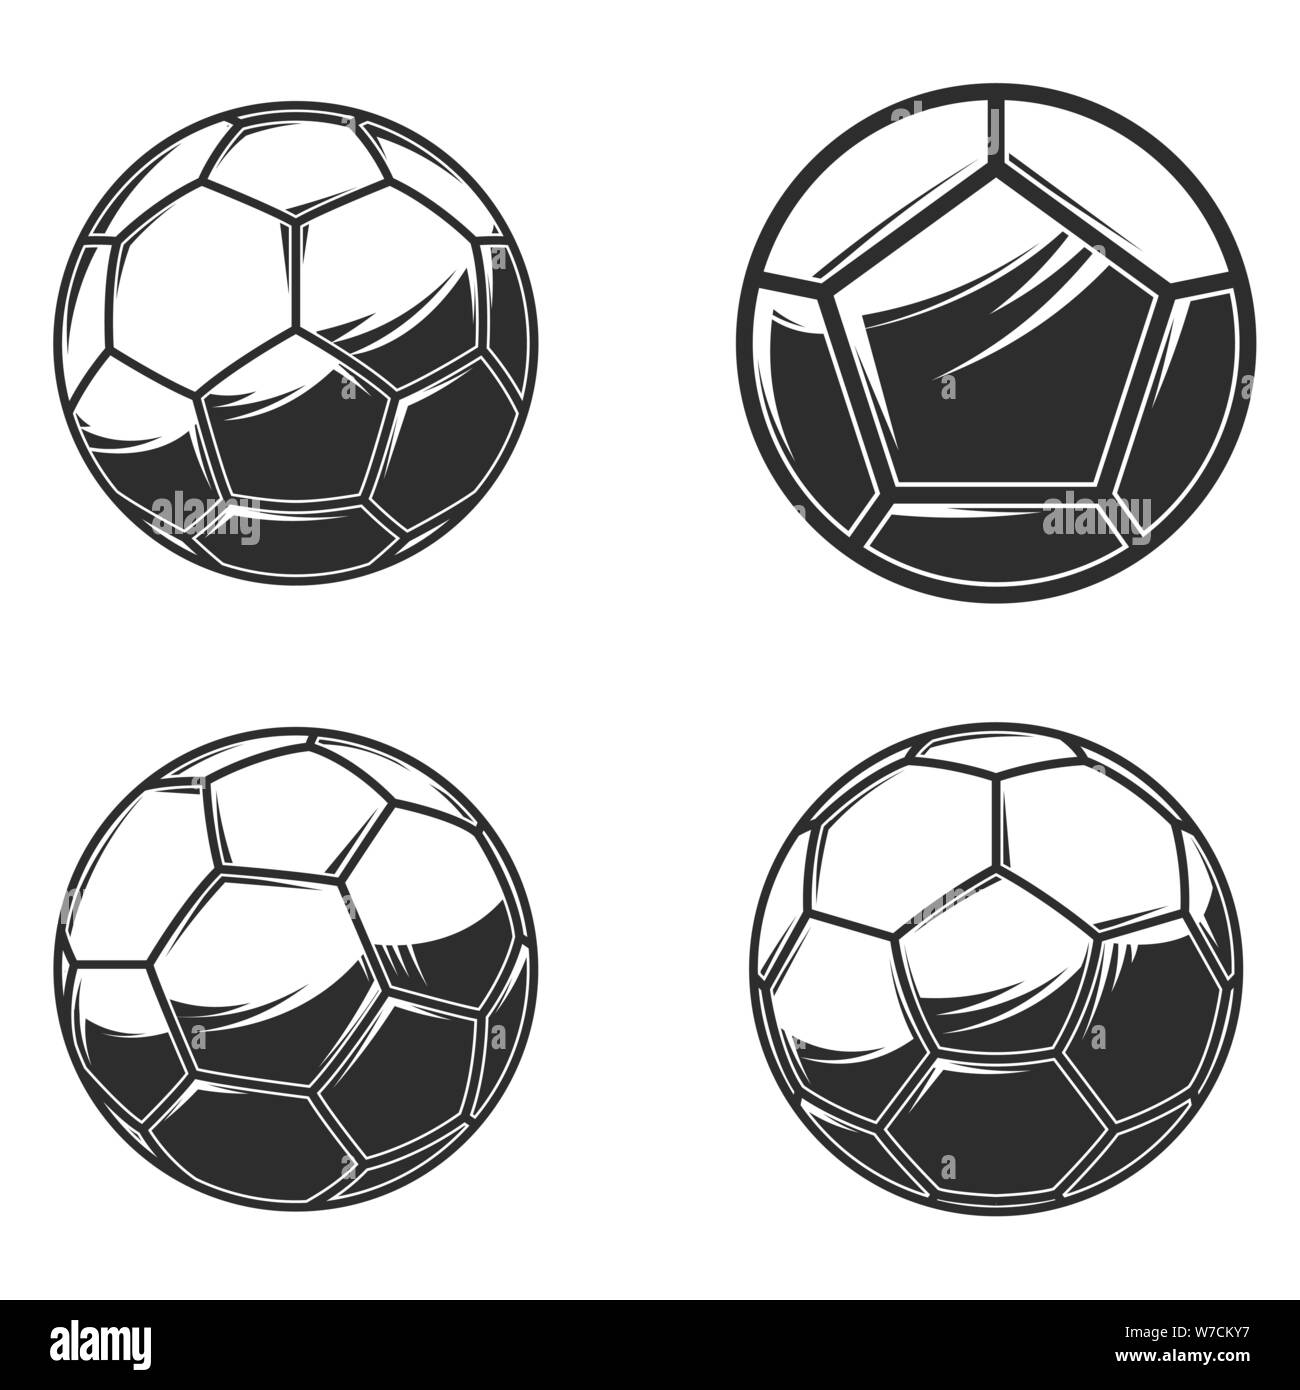 Fußball Fußball Bälle auf weißem Hintergrund. Design Element für Logo, Etiketten, Zeichen, Poster, Plakat, Karte, Banner. Vector Illustration Stock Vektor